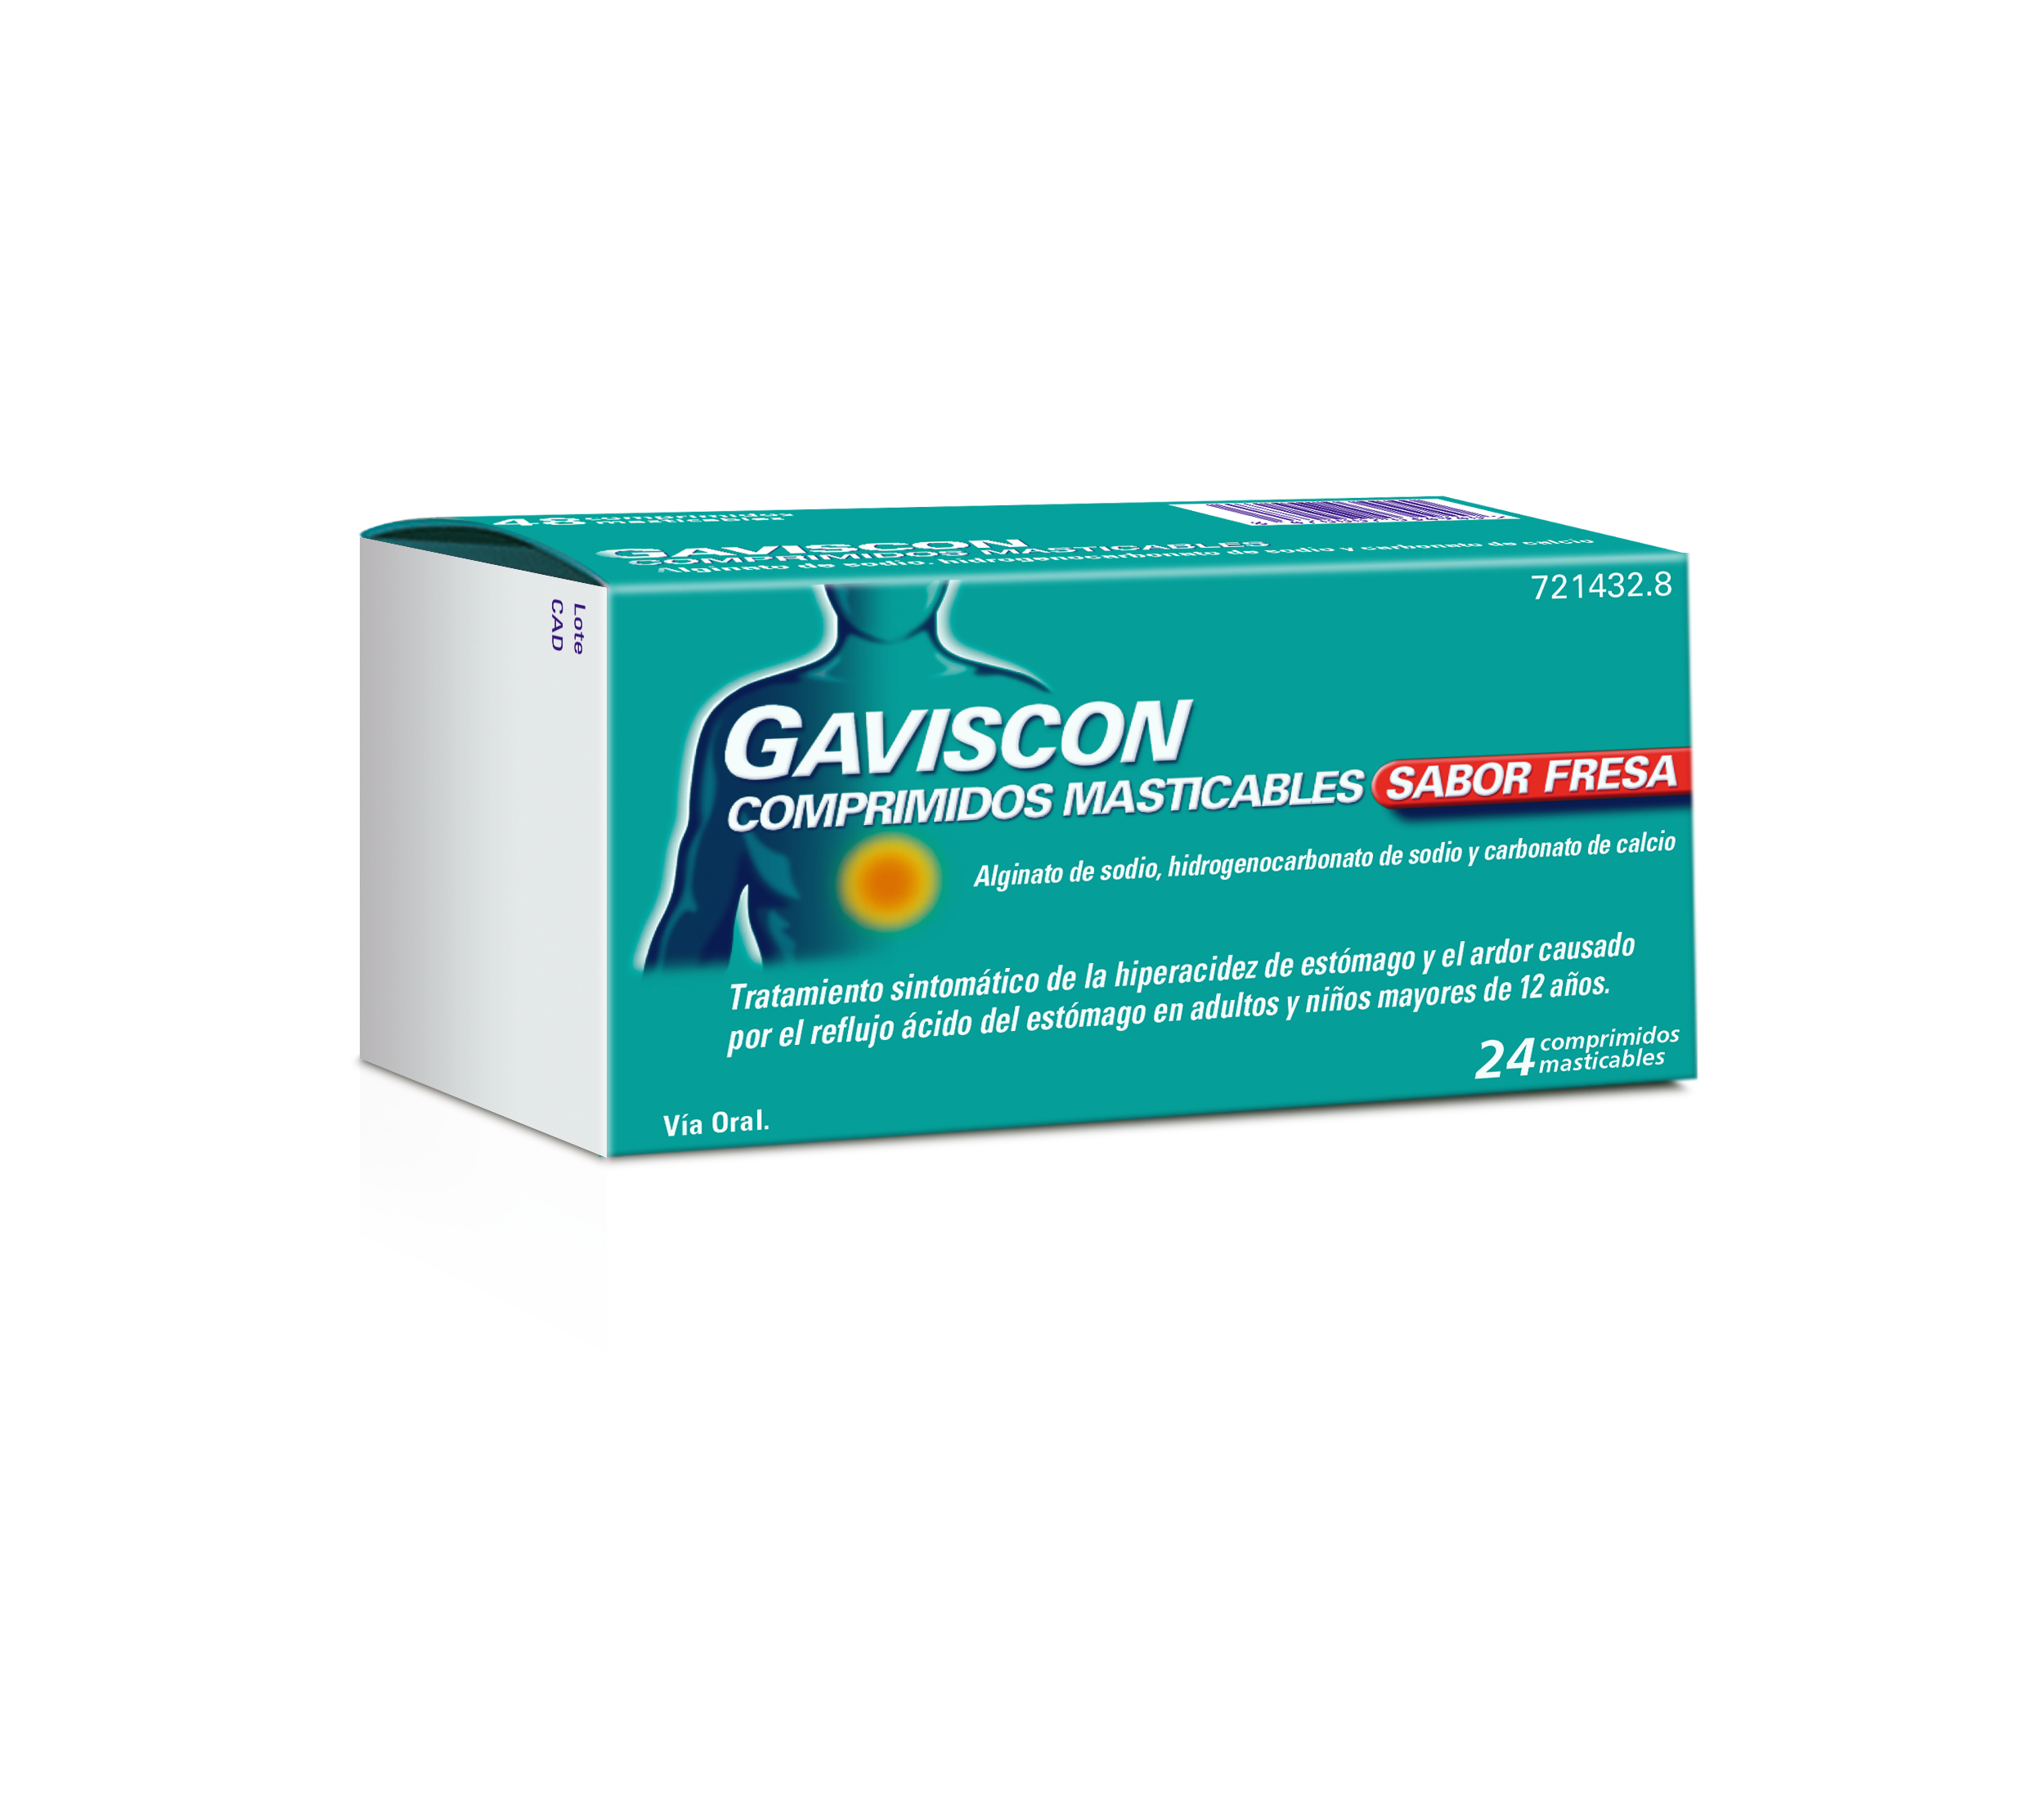 GAVISCON COMPRIMIDOS MASTICABLES SABOR FRESA, 24 comprimidos